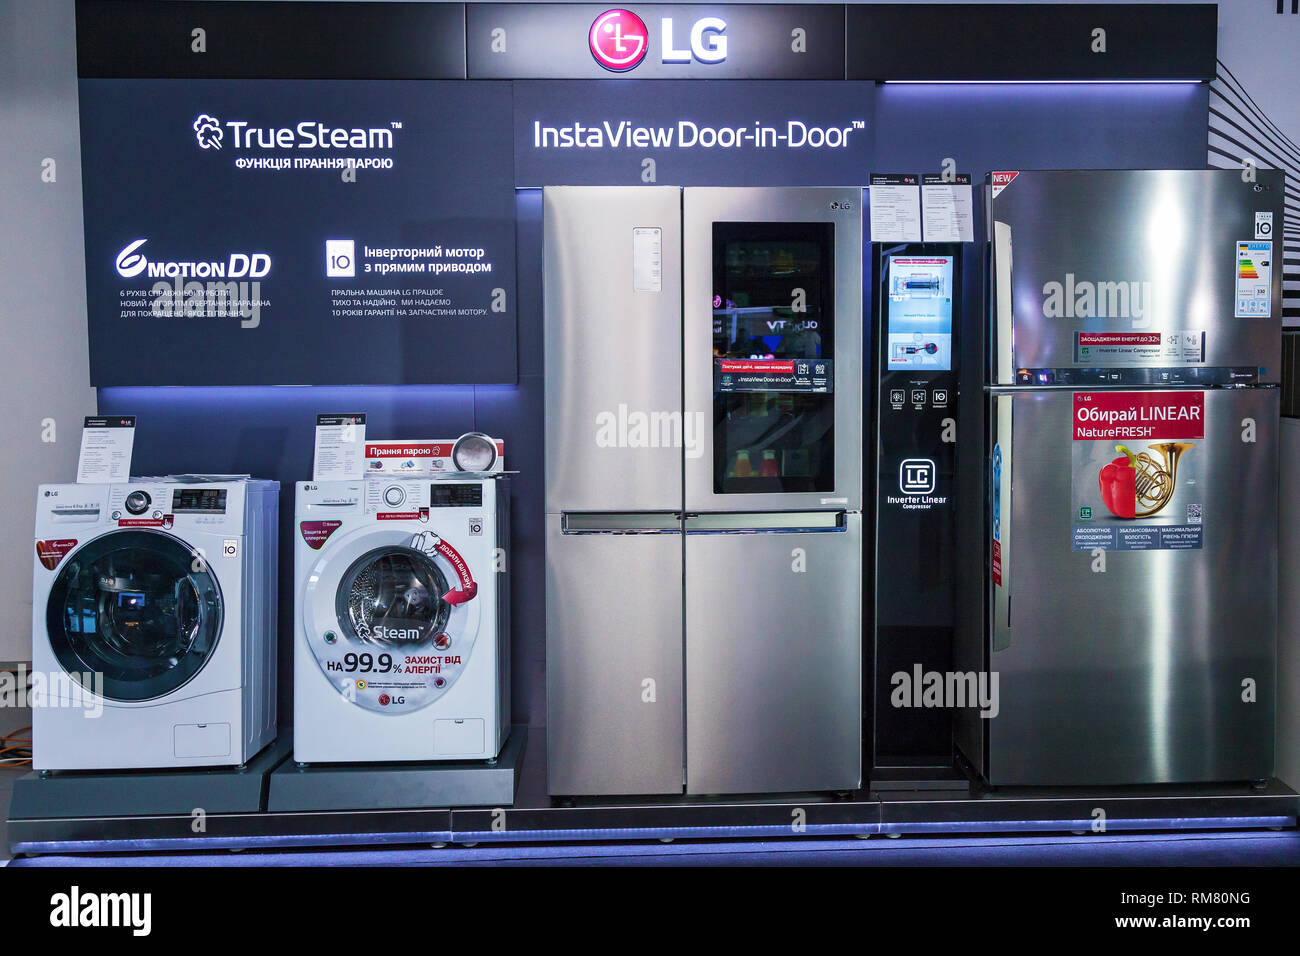 Kiev, Ukraine 12 juin 2018 : LG société présente de nouveaux électroménagers téléviseurs, réfrigérateurs, machines à laver, micro-ondes, d'un téléphone et d'une chaîne hi-fi Banque D'Images